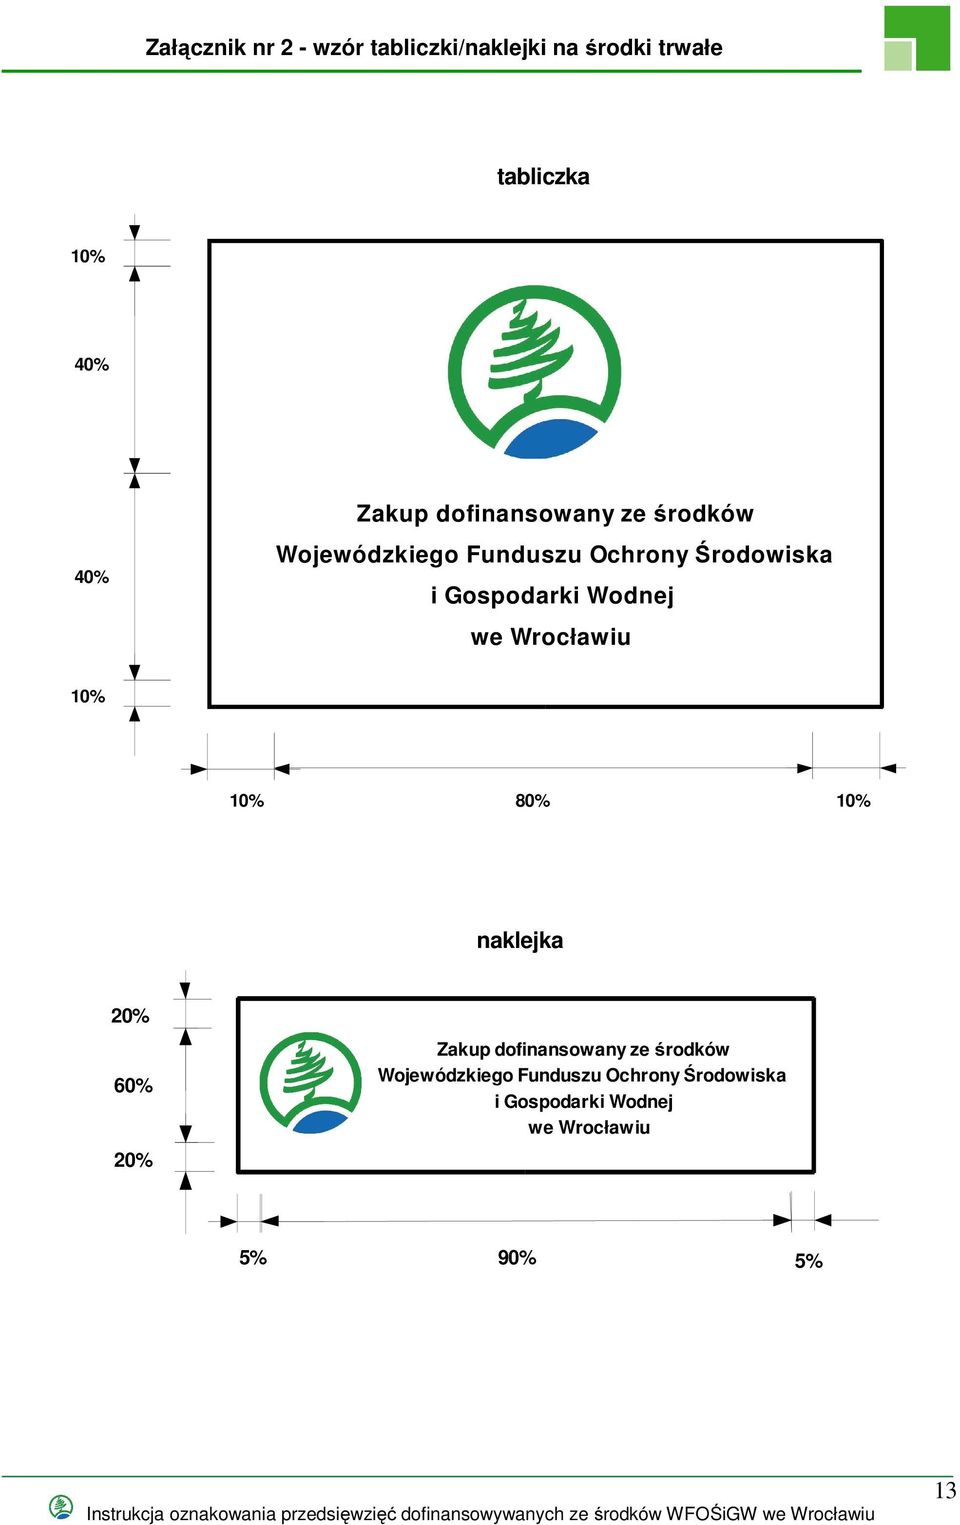 Wodnej we Wrocławiu 10cm 80% naklejka 20% 60% 2cm  Wodnej we Wrocławiu 20% 5% 0cm 9cm